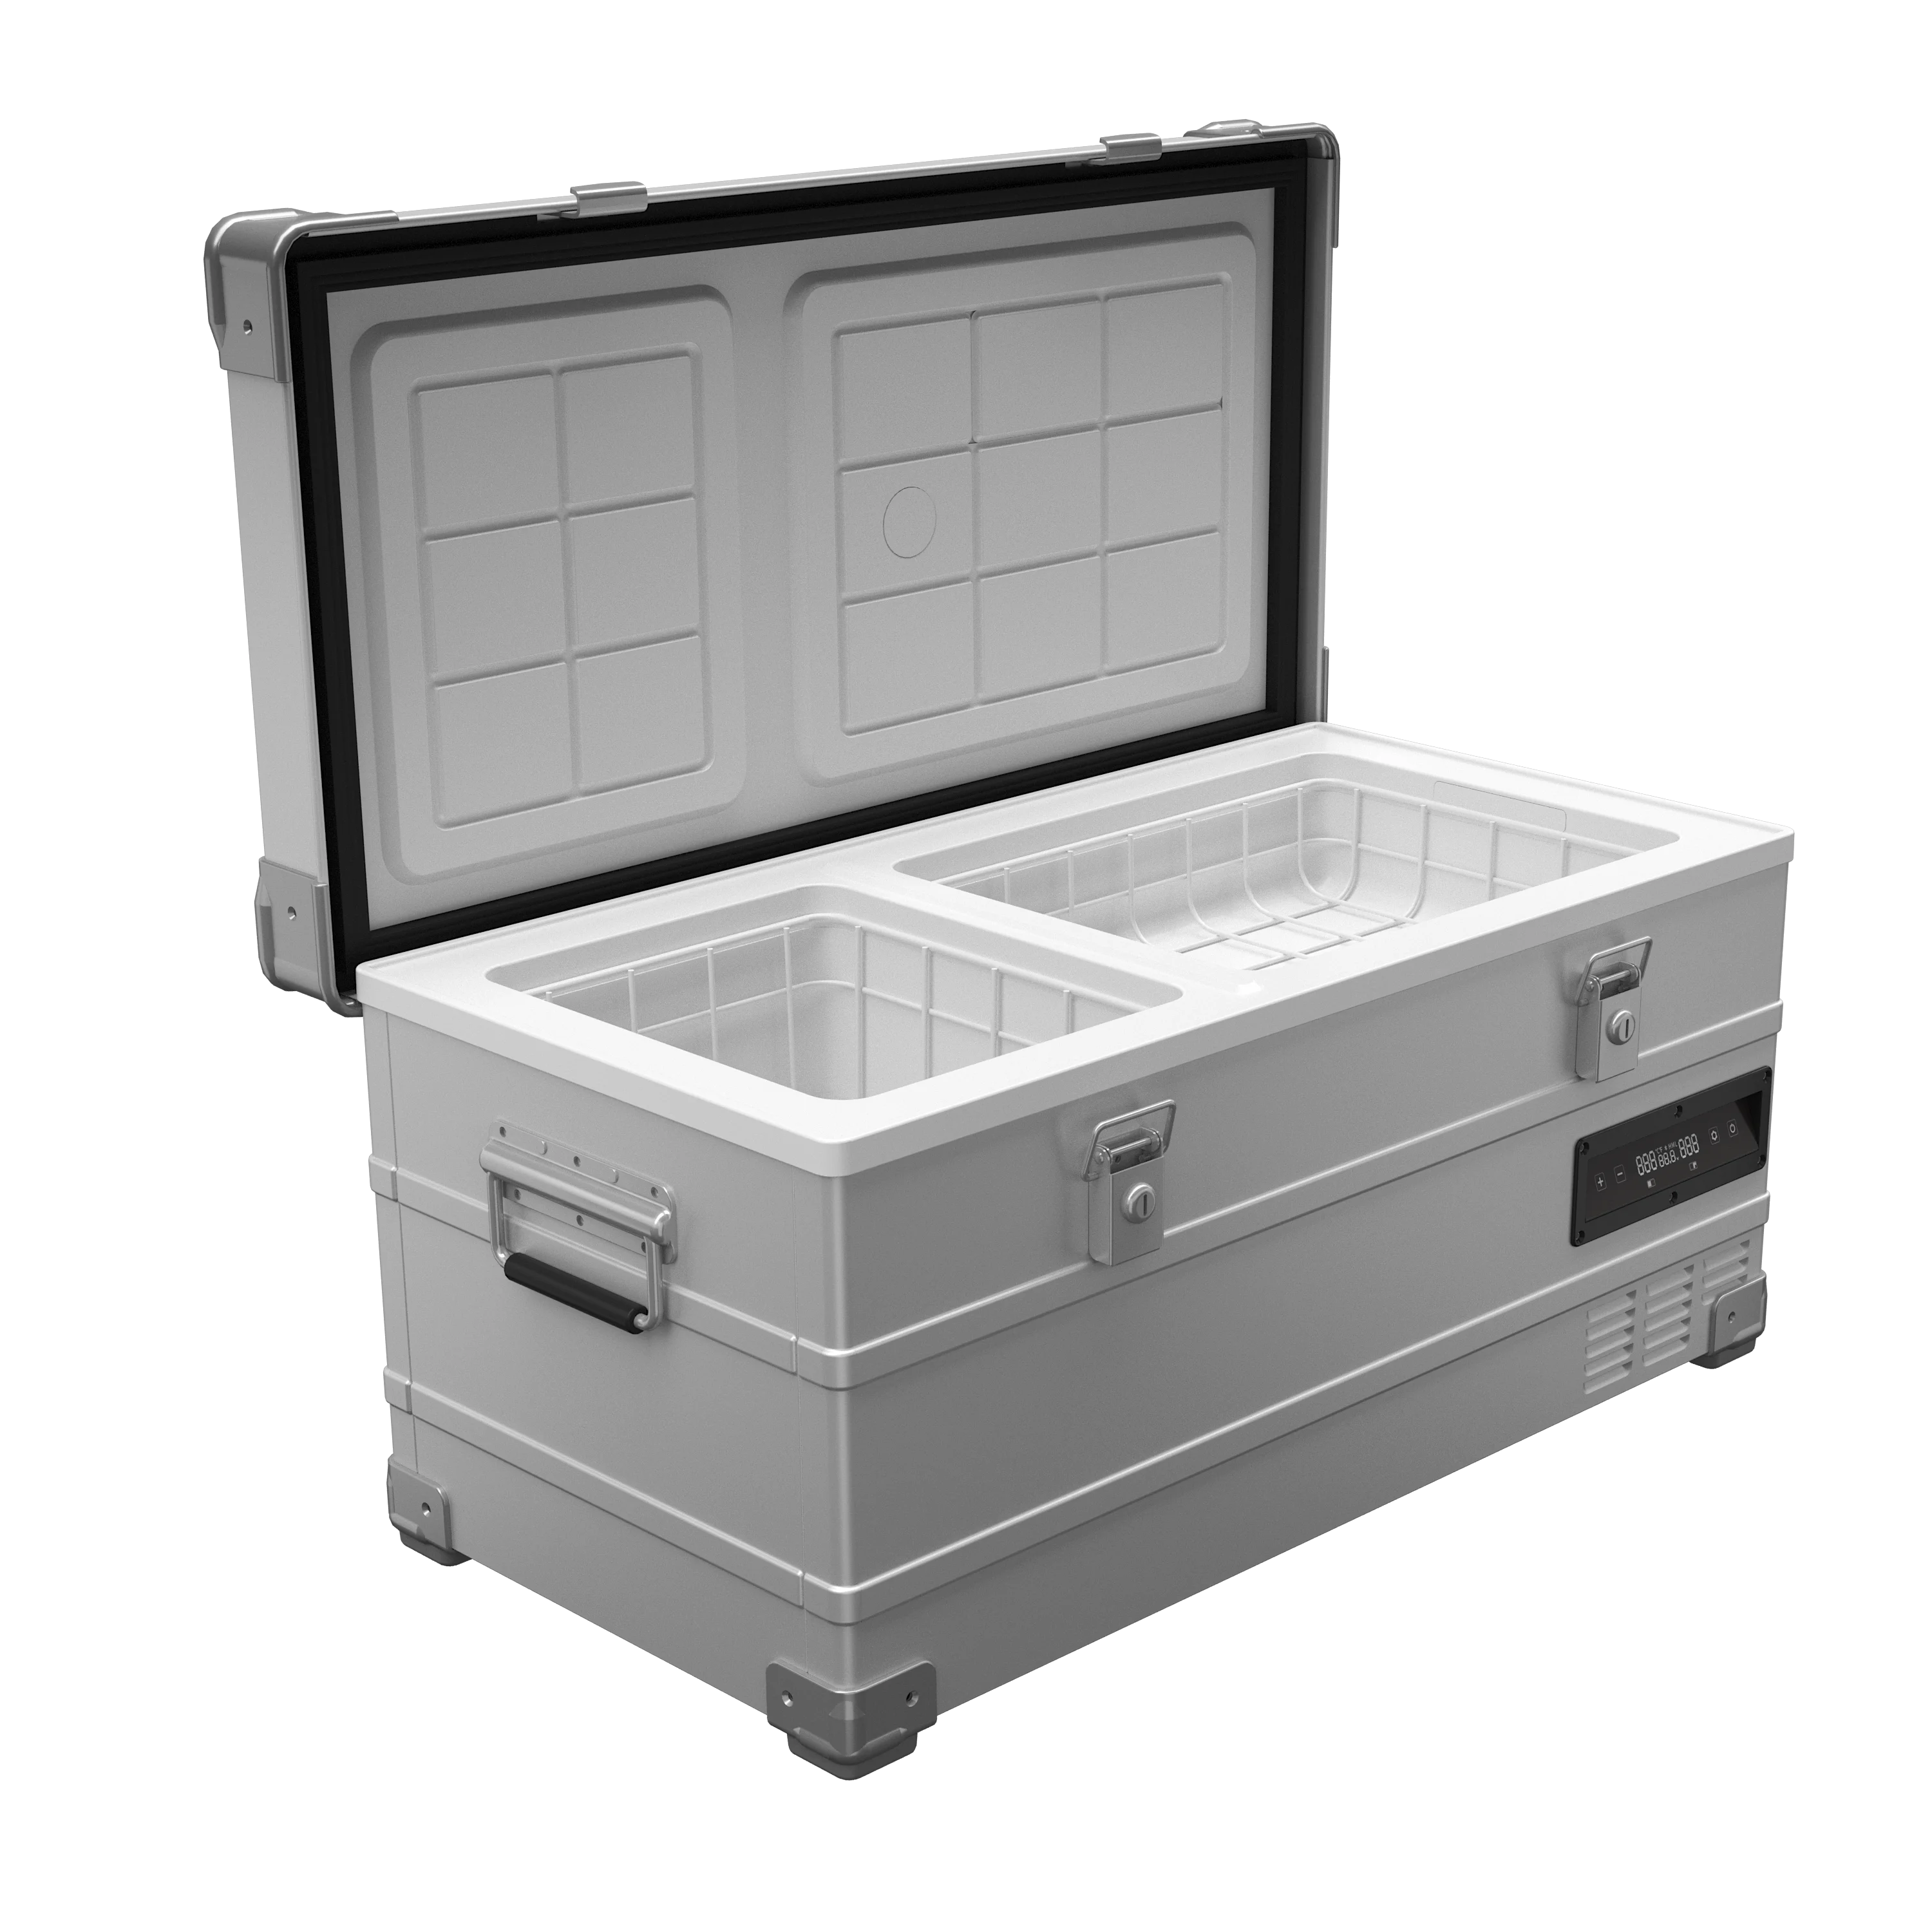 Source Refrigerador de coche, 42 Quart, 12V 110 V, congelador portátil para Auto, RV, camión, Camping, viajes, hogar, compresor m.alibaba.com